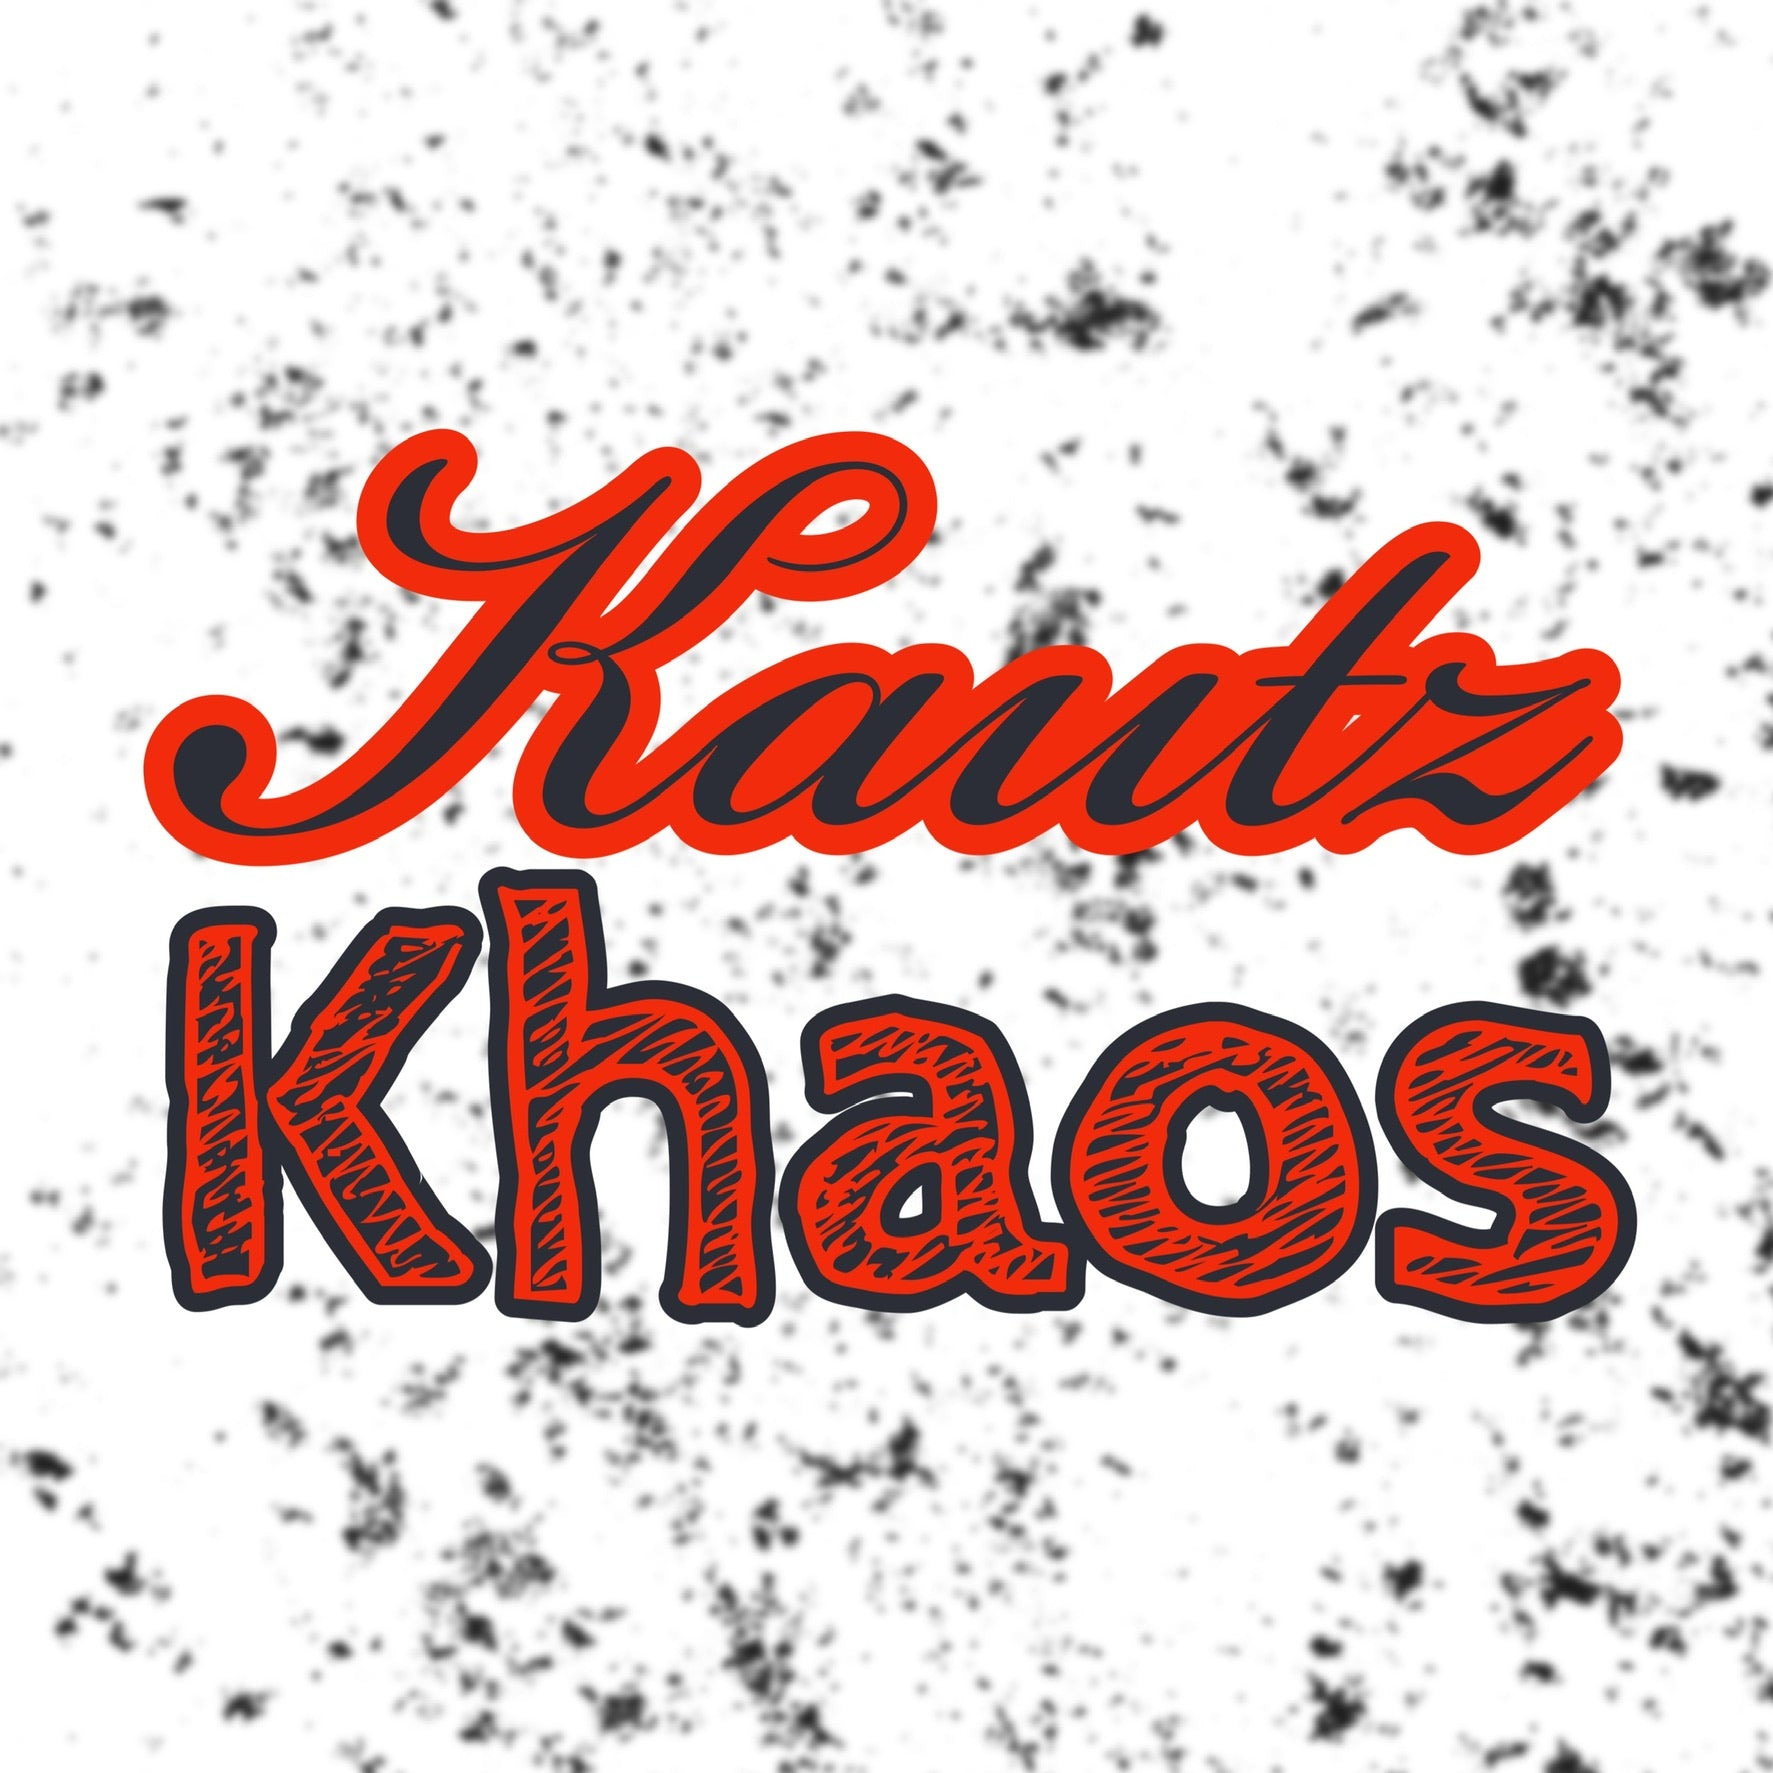 Kautz Khaos